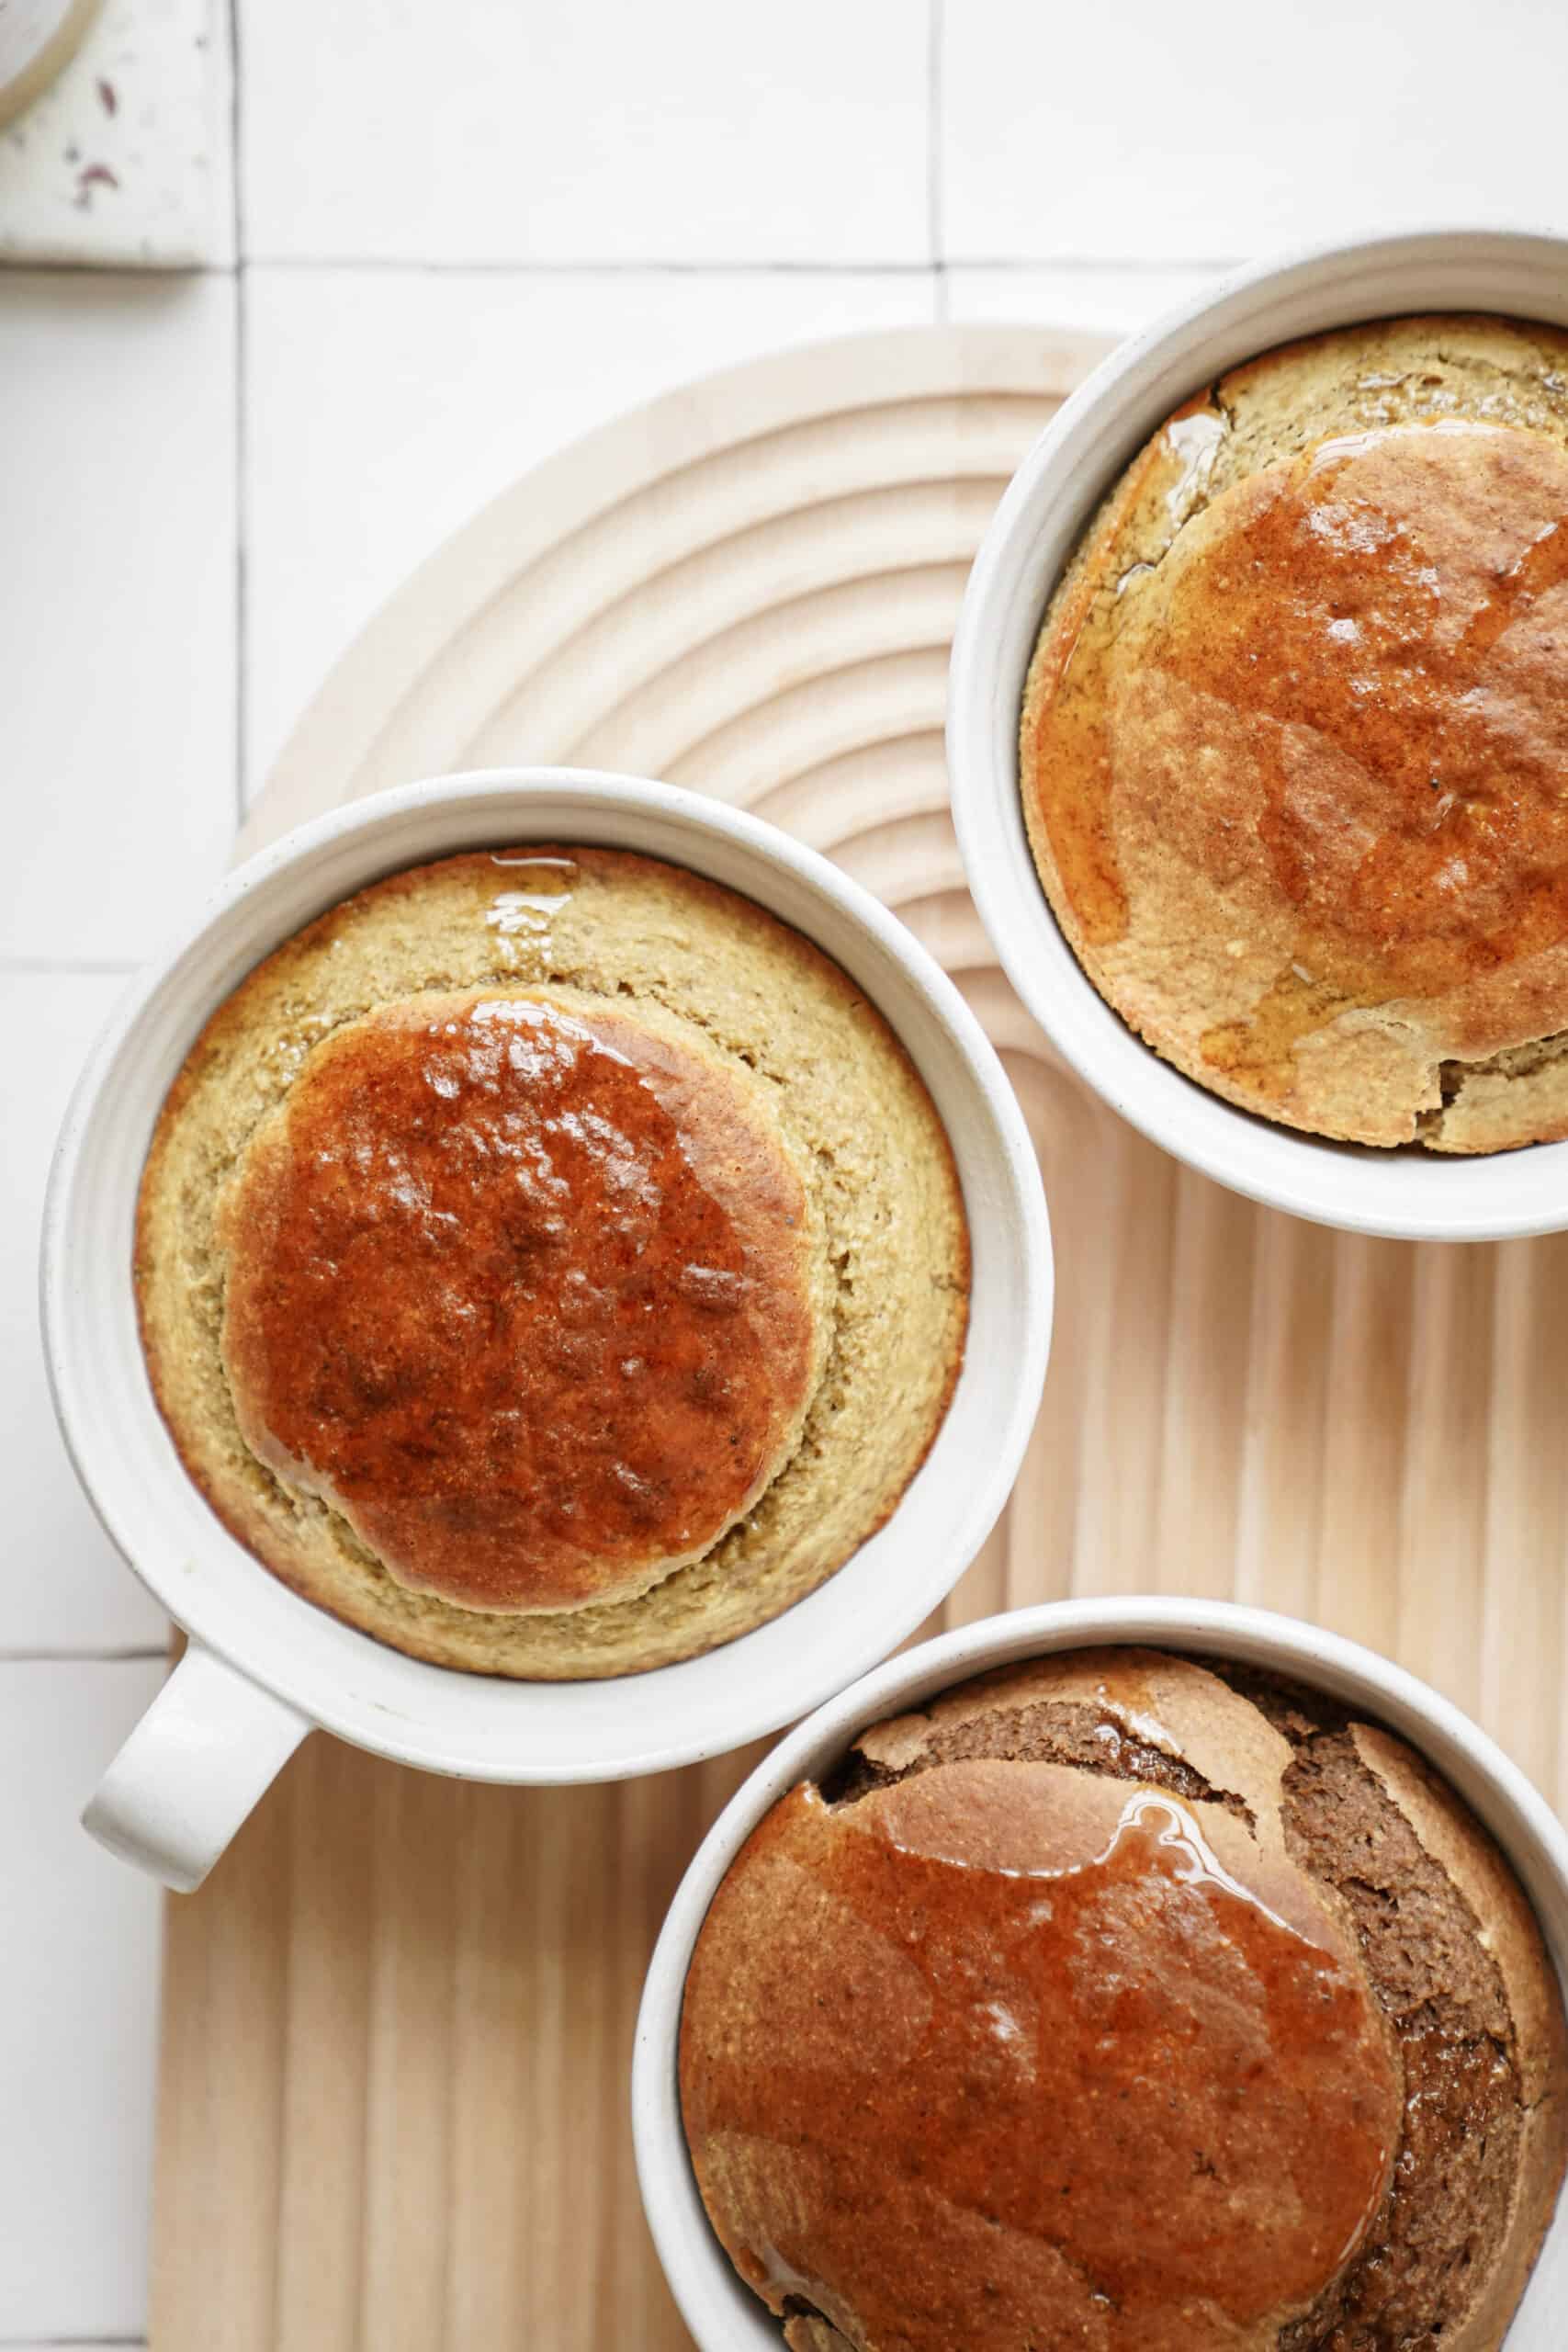 Baked oats recipe in mugs